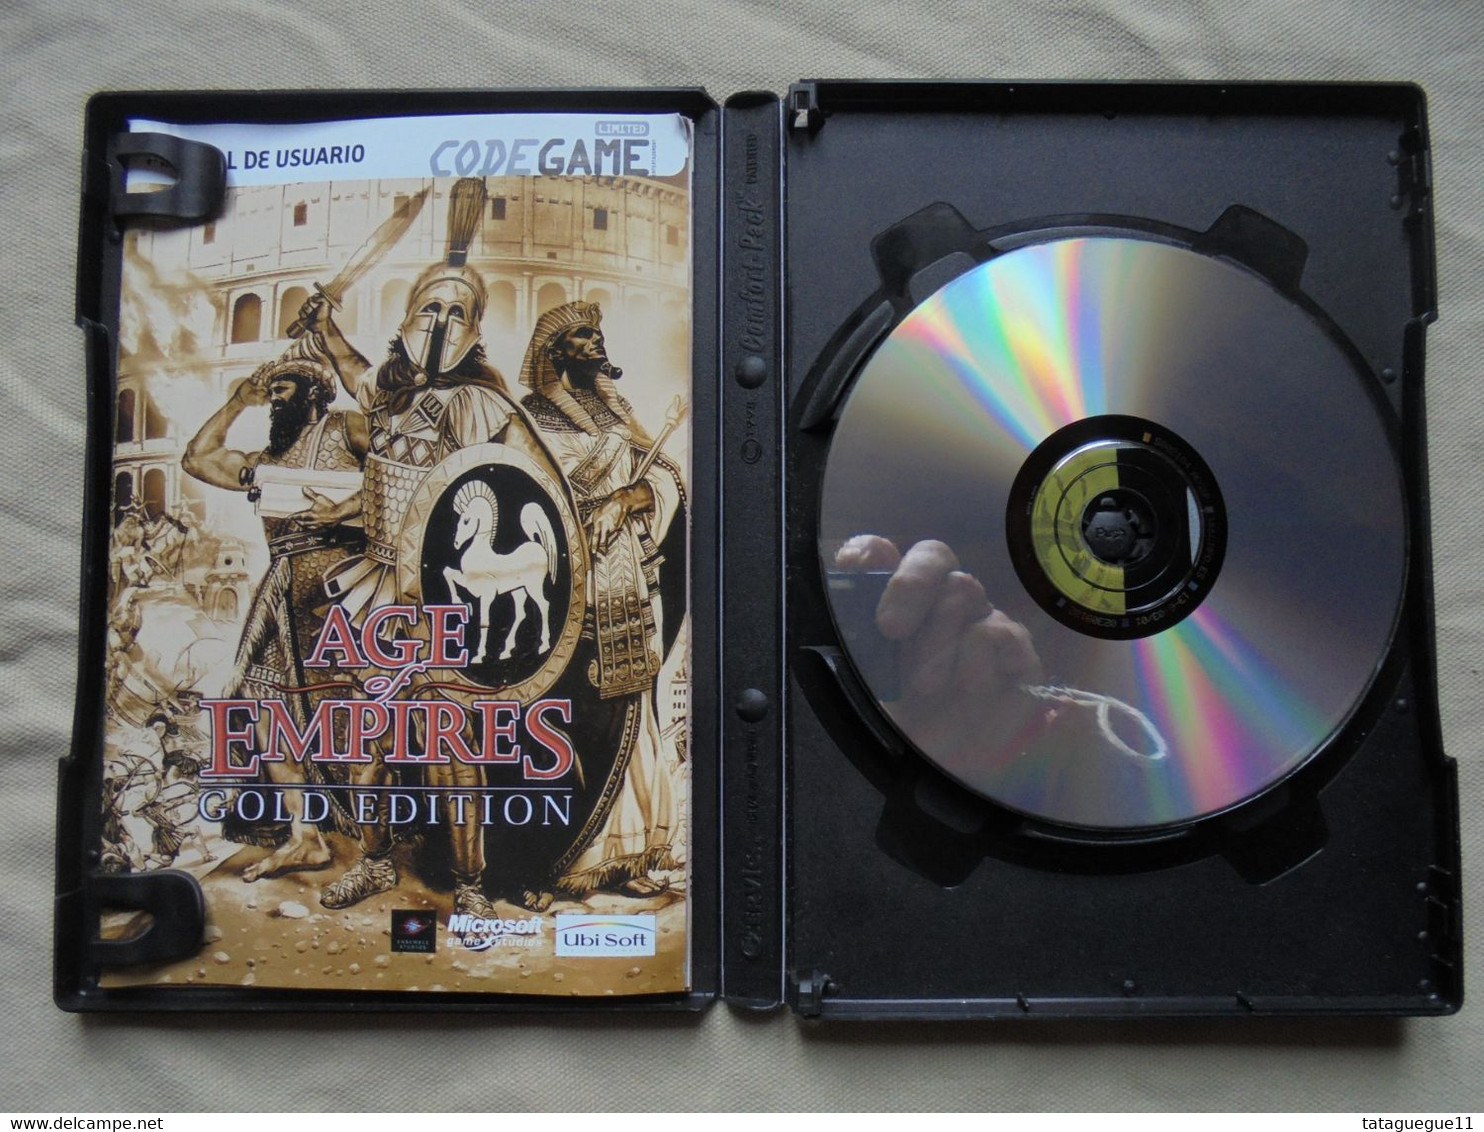 Vintage - Jeu PC CD Rom - Age Of Empires Totalmente En Castellano - 1998 - Giochi PC